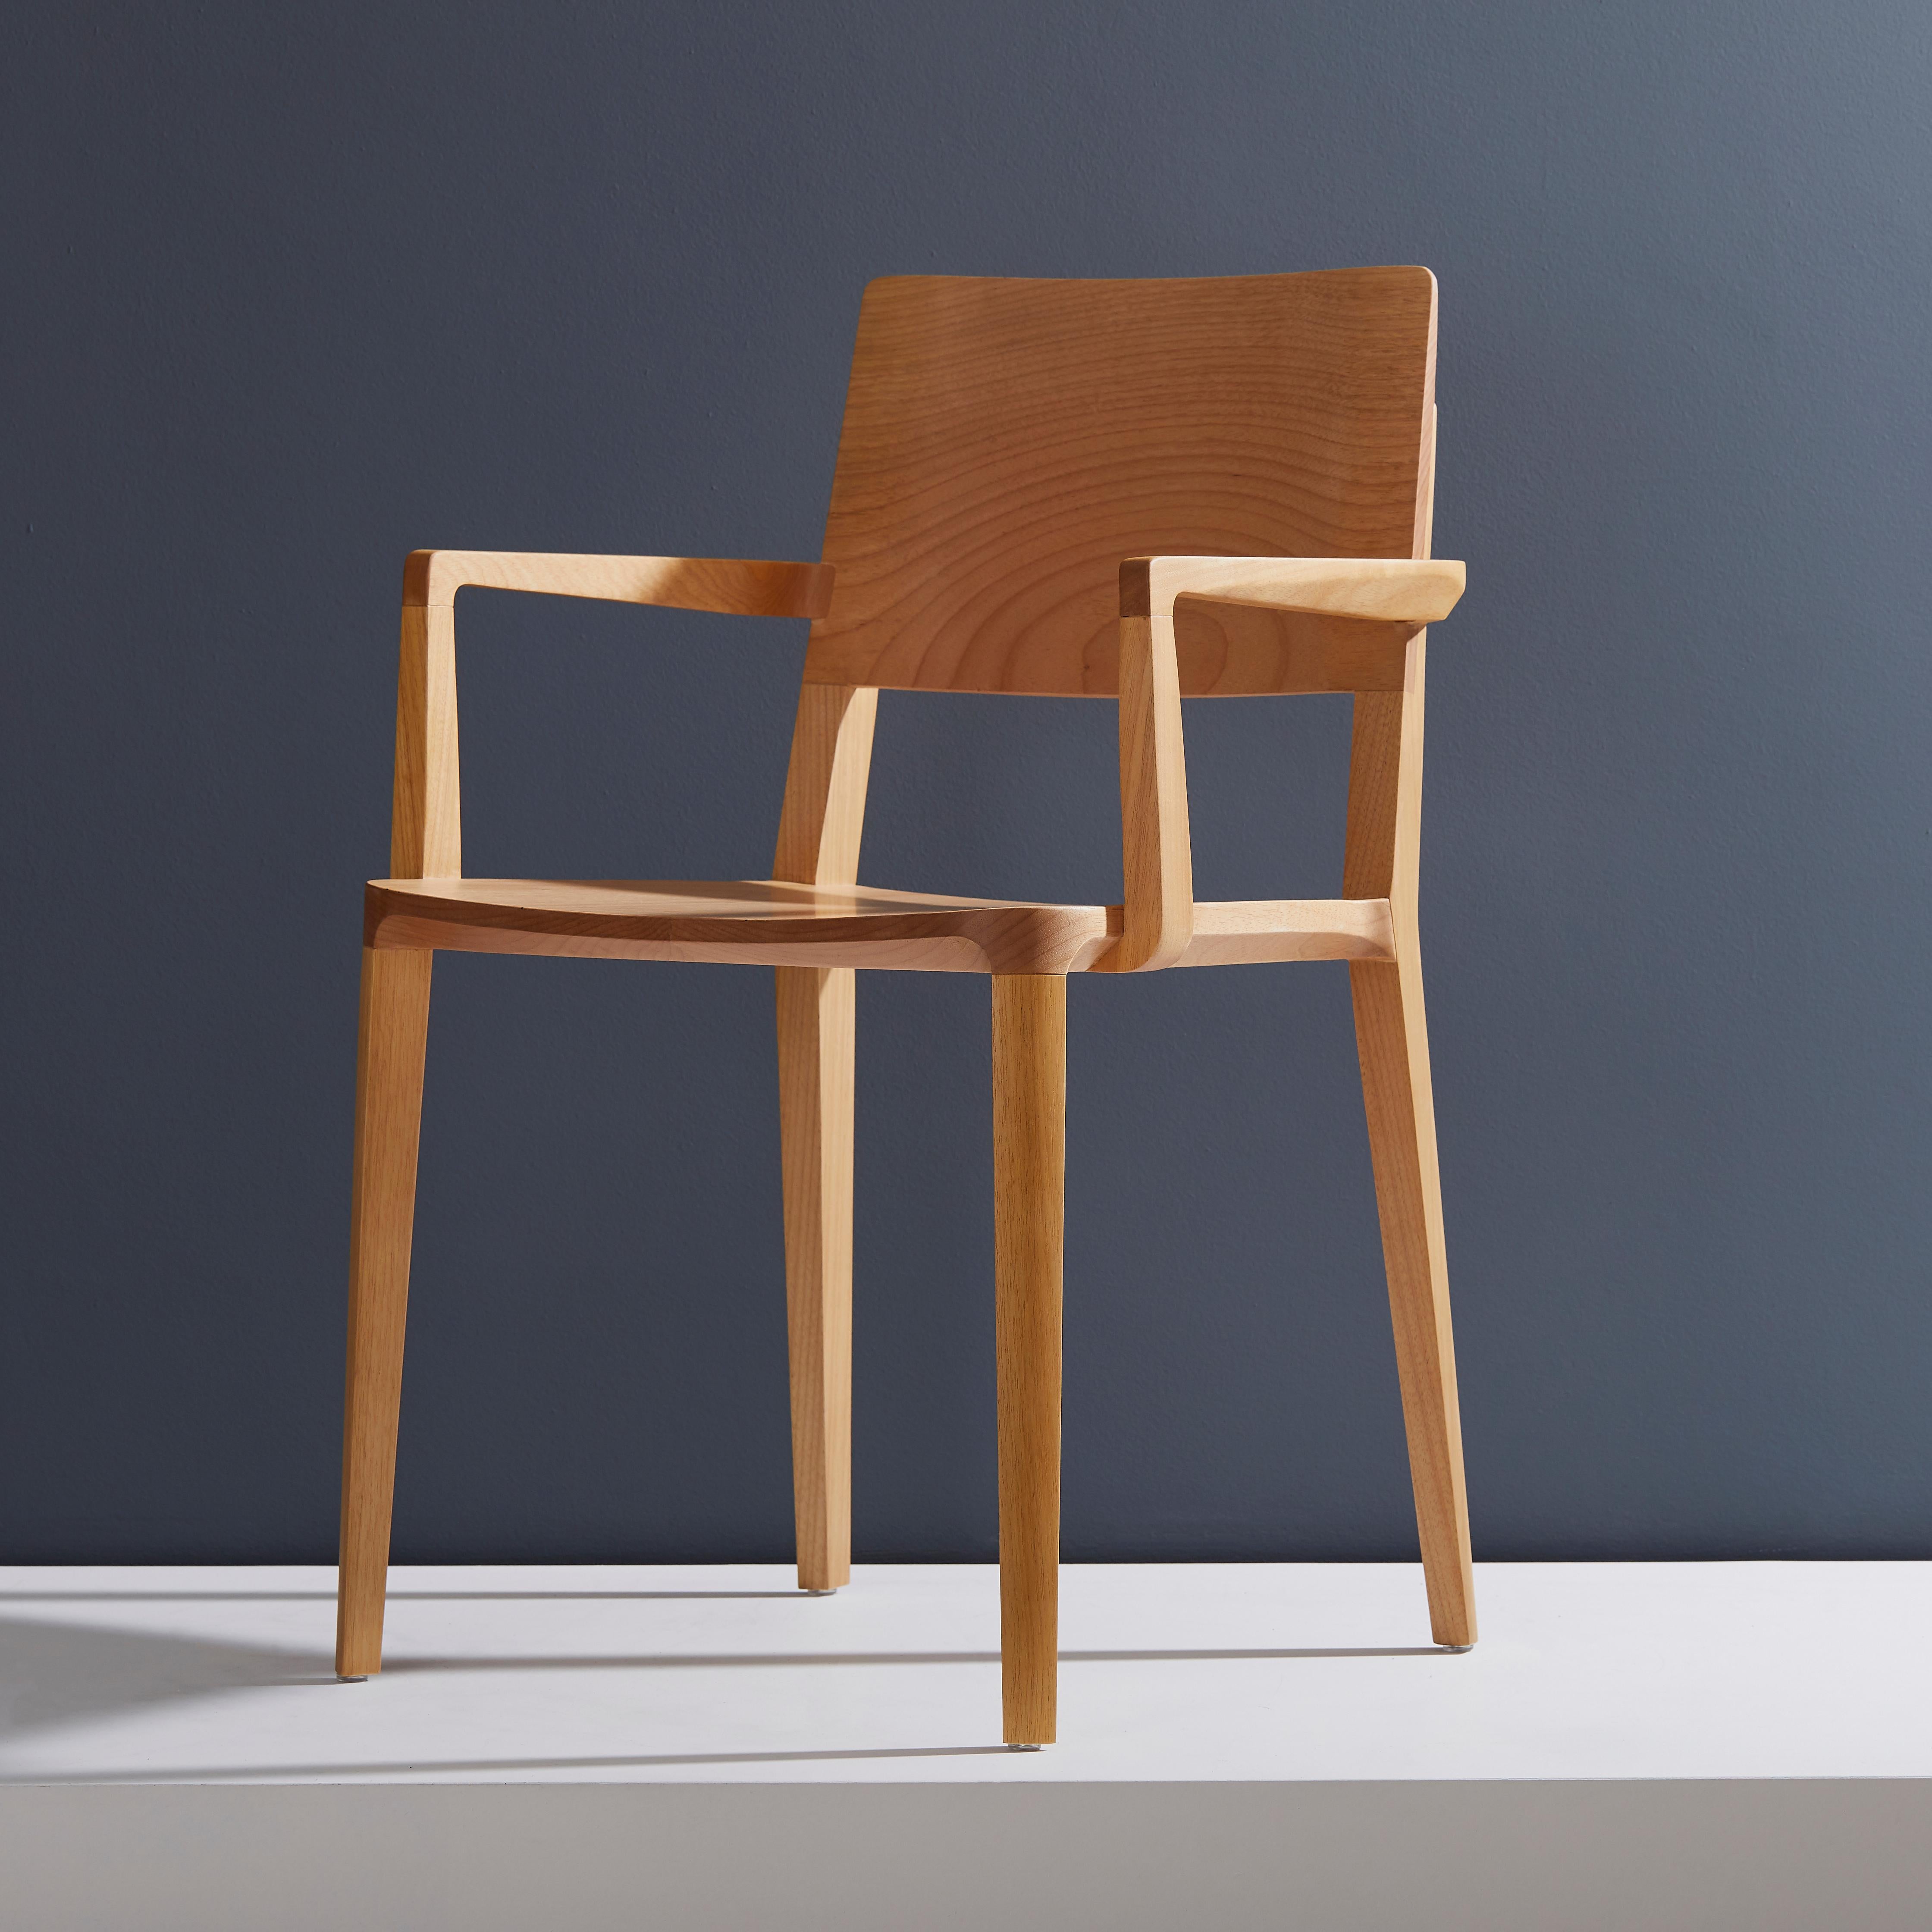 Stuhlkollektion Evo.

Unsere Evo-Kollektion basiert auf der harmonischen Verschmelzung von geometrischen Formen und der modernen Interpretation der Archetypen des Holzes. 

Alle Elemente, aus denen sich der Stuhl zusammensetzt, werden präzise